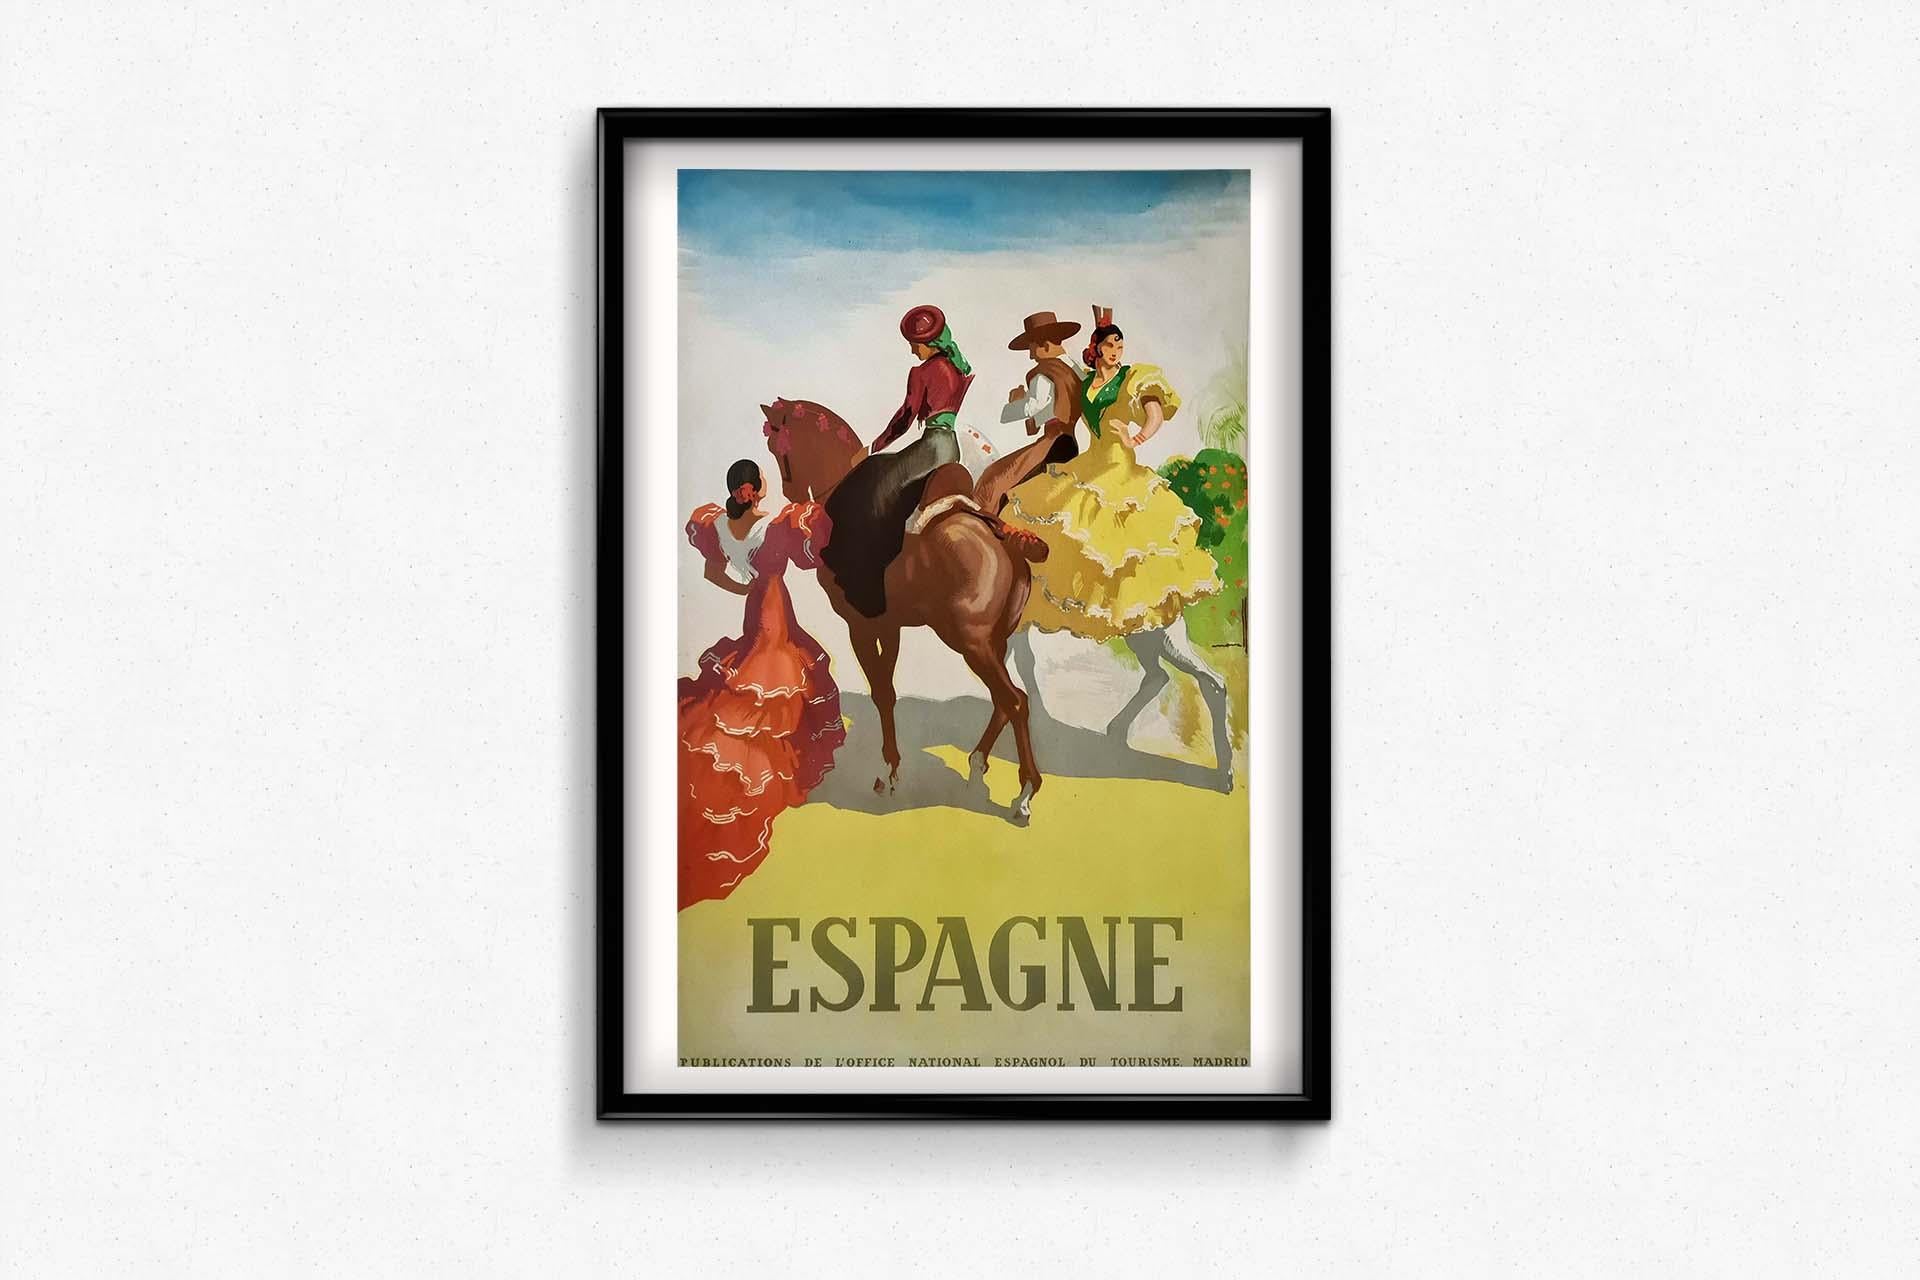 Das Original-Reiseplakat von Morell aus dem Jahr 1950, das Spanien zeigt, fängt mit seiner Darstellung von Kavalieren die Essenz von Abenteuer und Romantik ein, die mit Reisen in dieses pulsierende Land verbunden sind. Dieses Plakat aus der Mitte